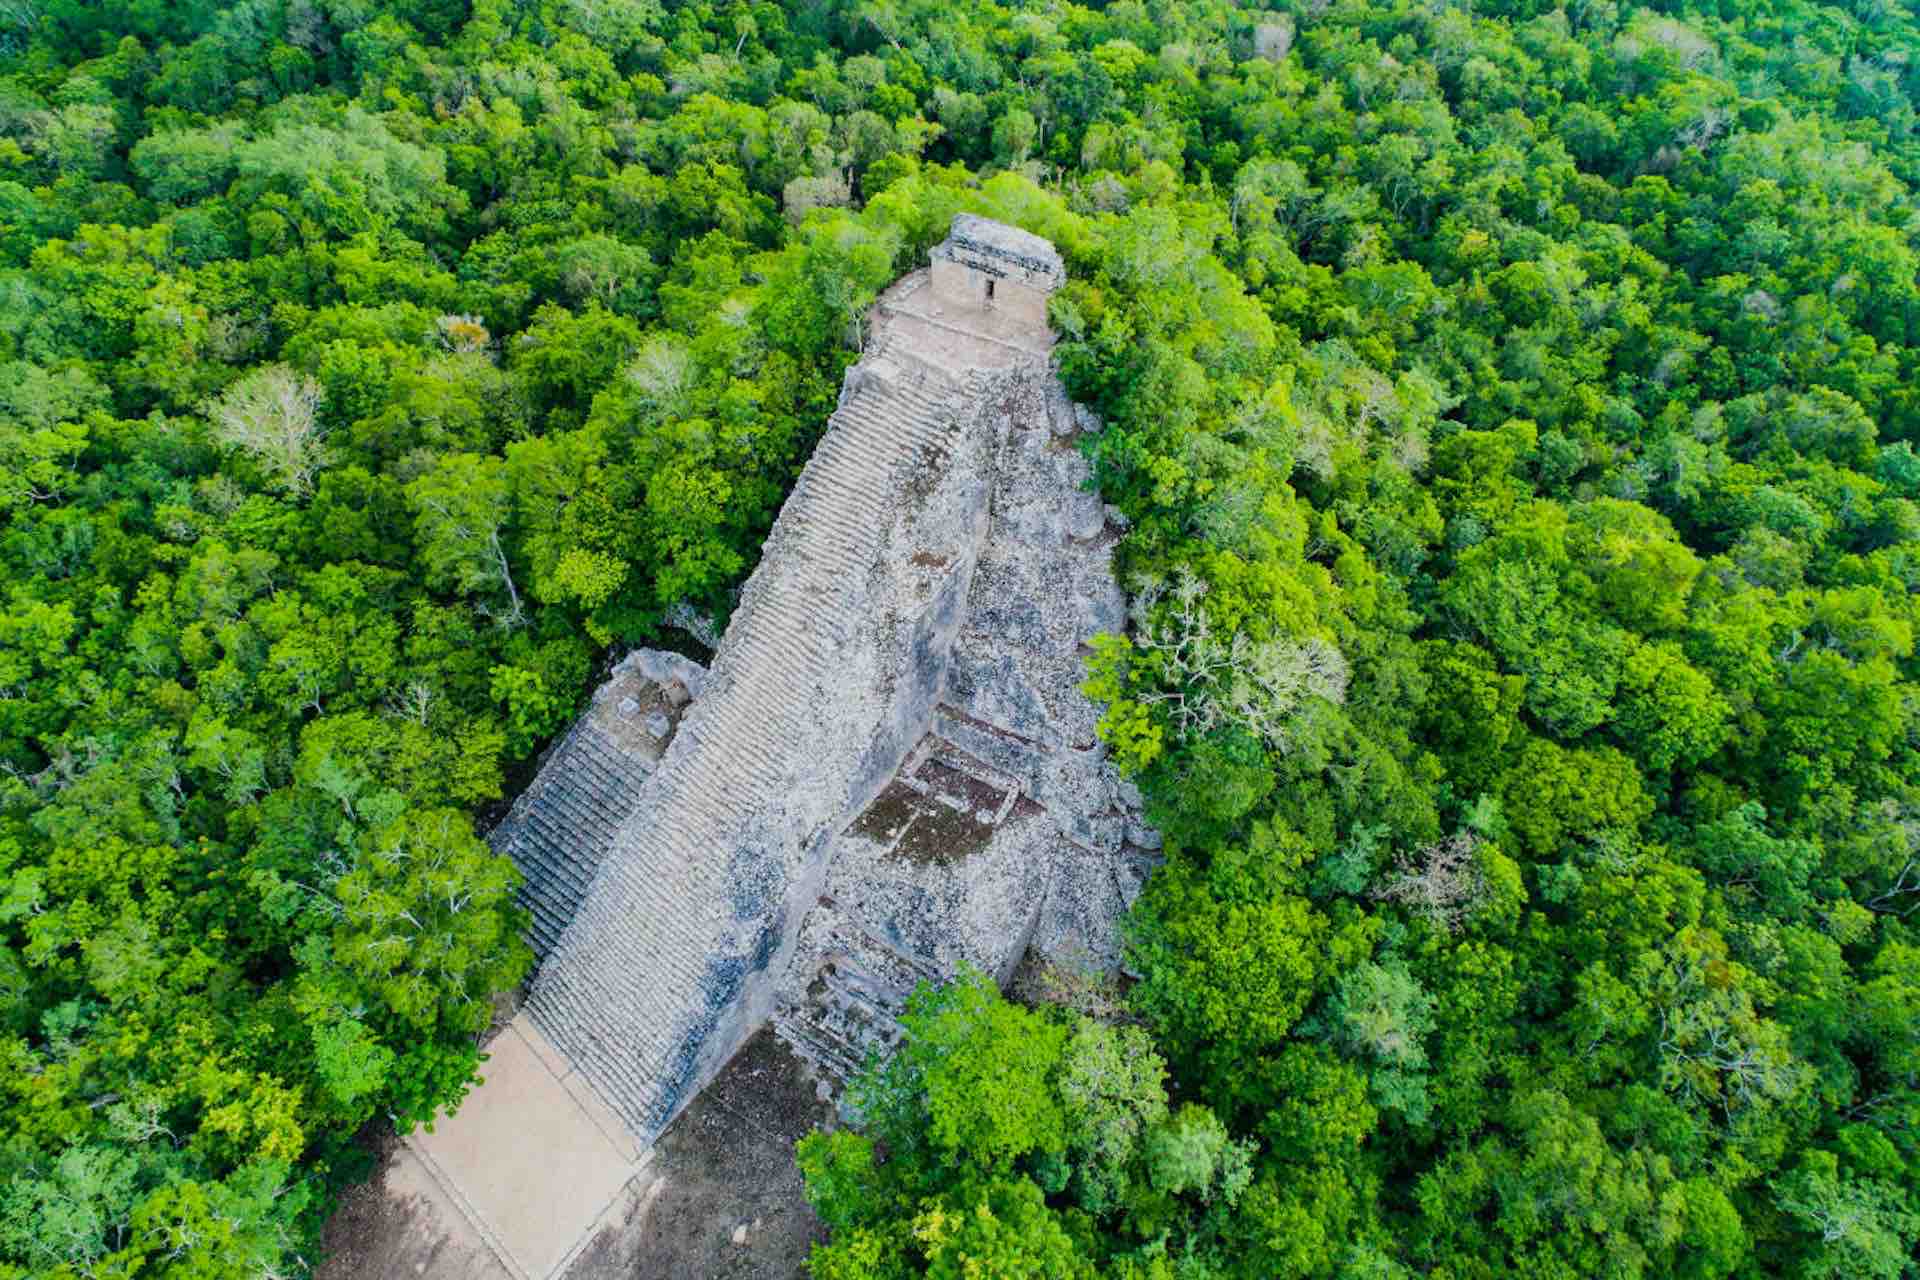 Mayan pyramid Cobá in Tulum